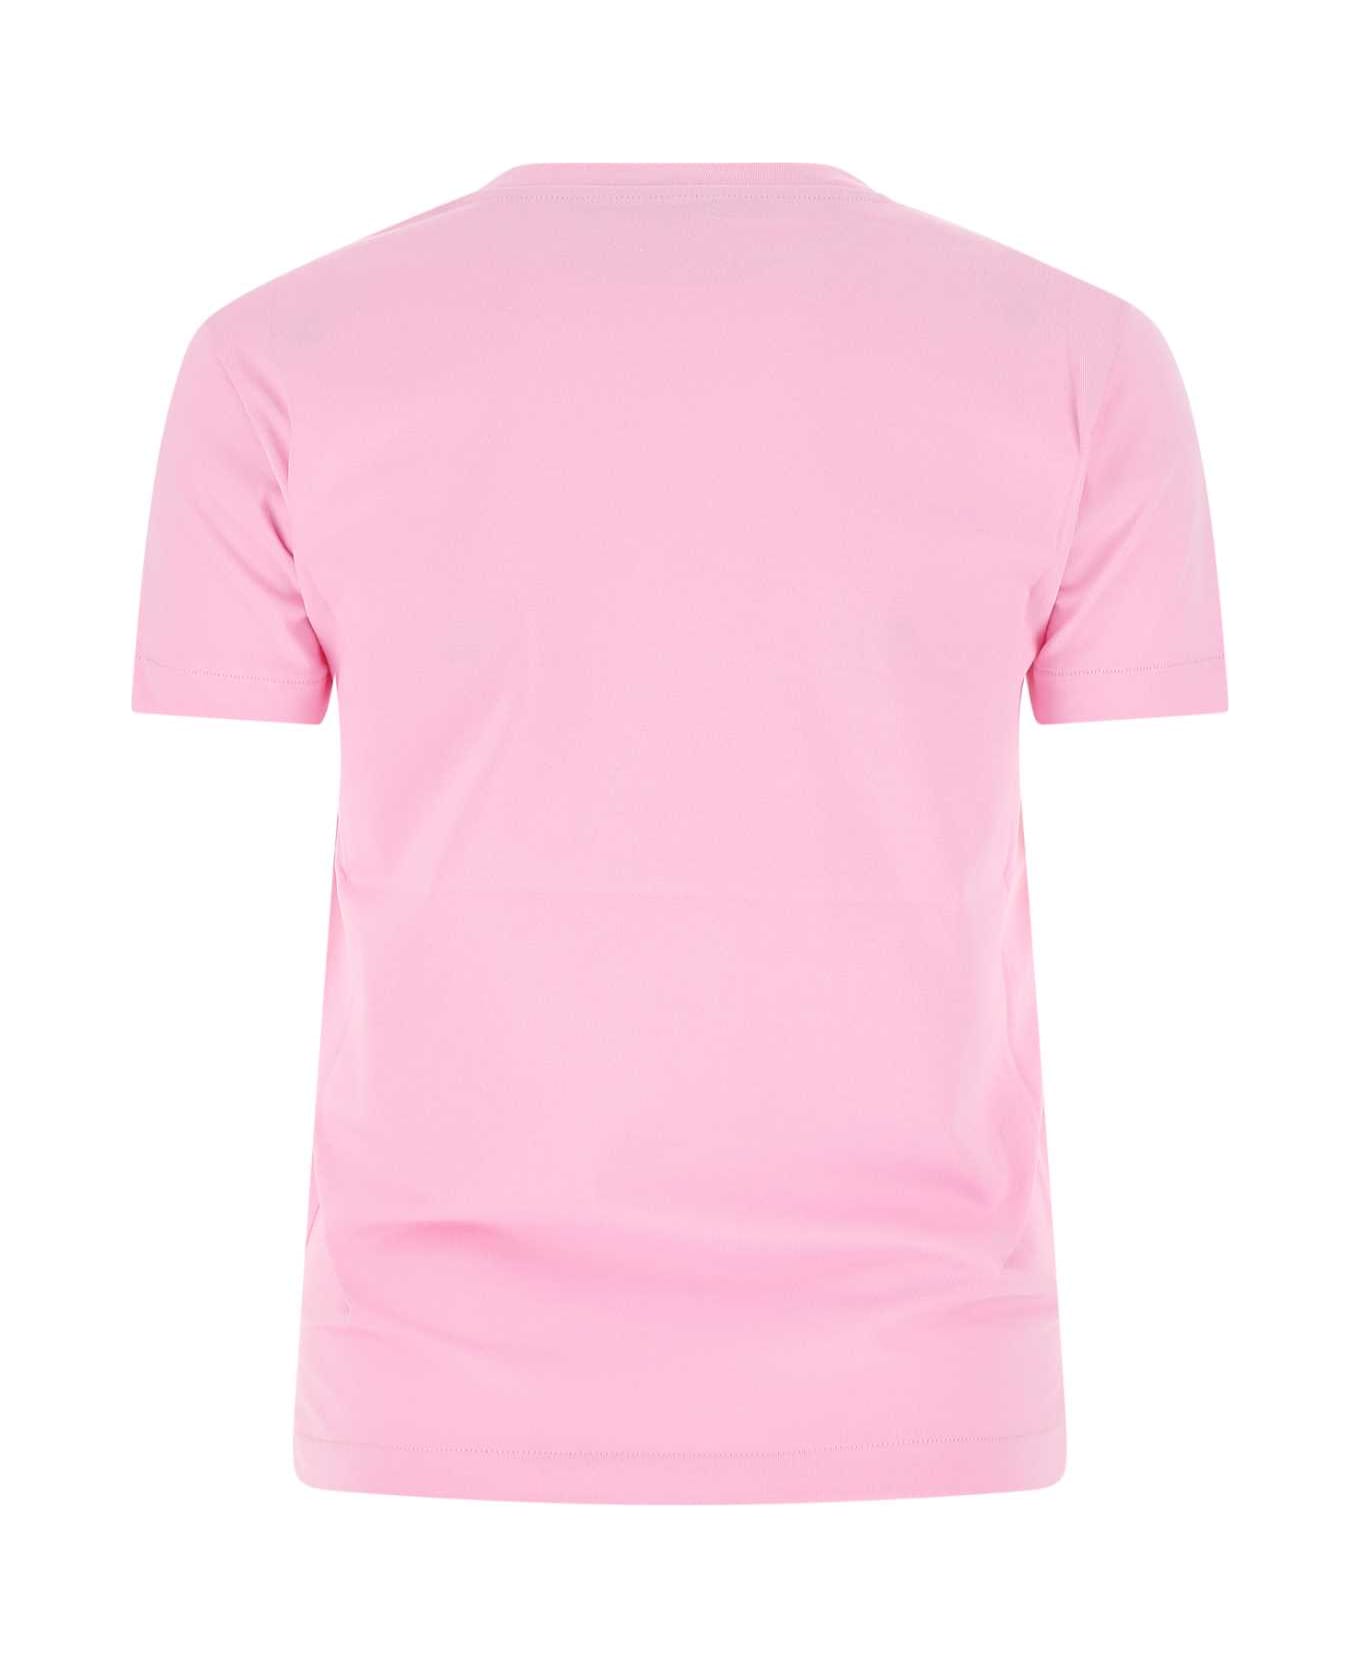 Stella McCartney Pink Cotton T-shirt - 5636